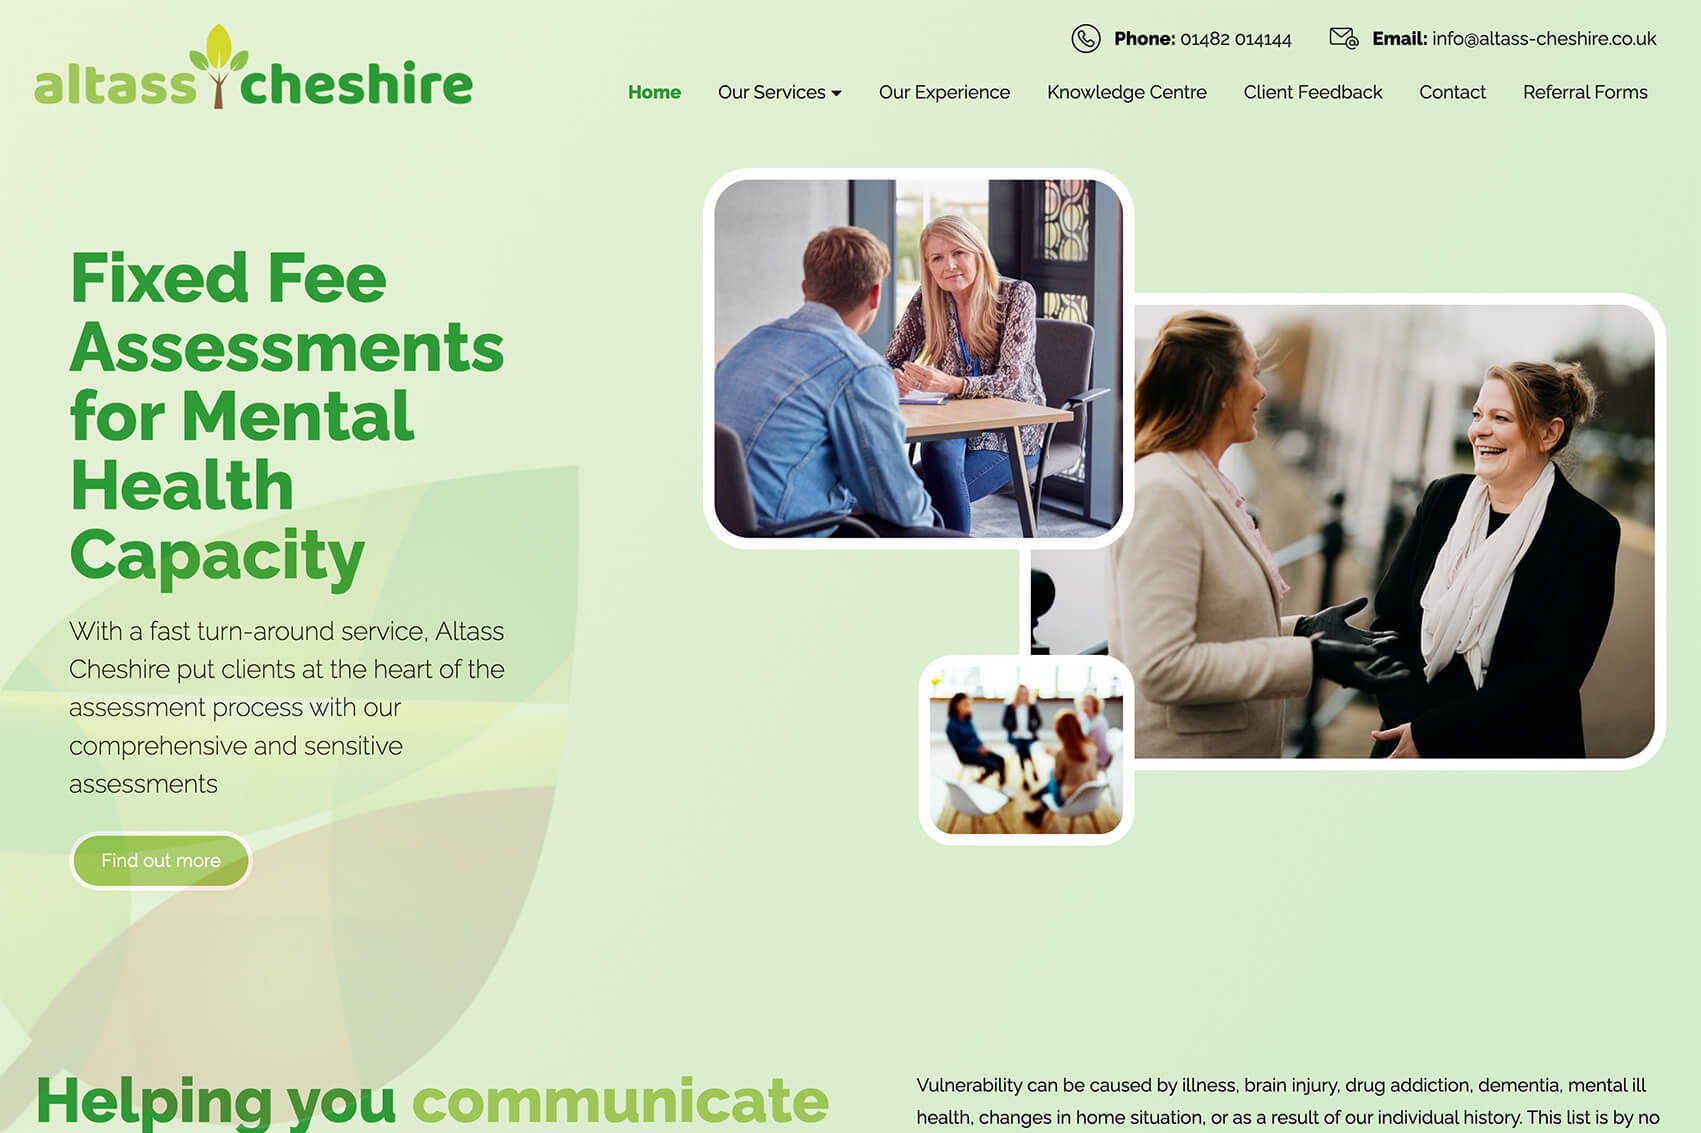 Max website design - it'seeze websites Leeds